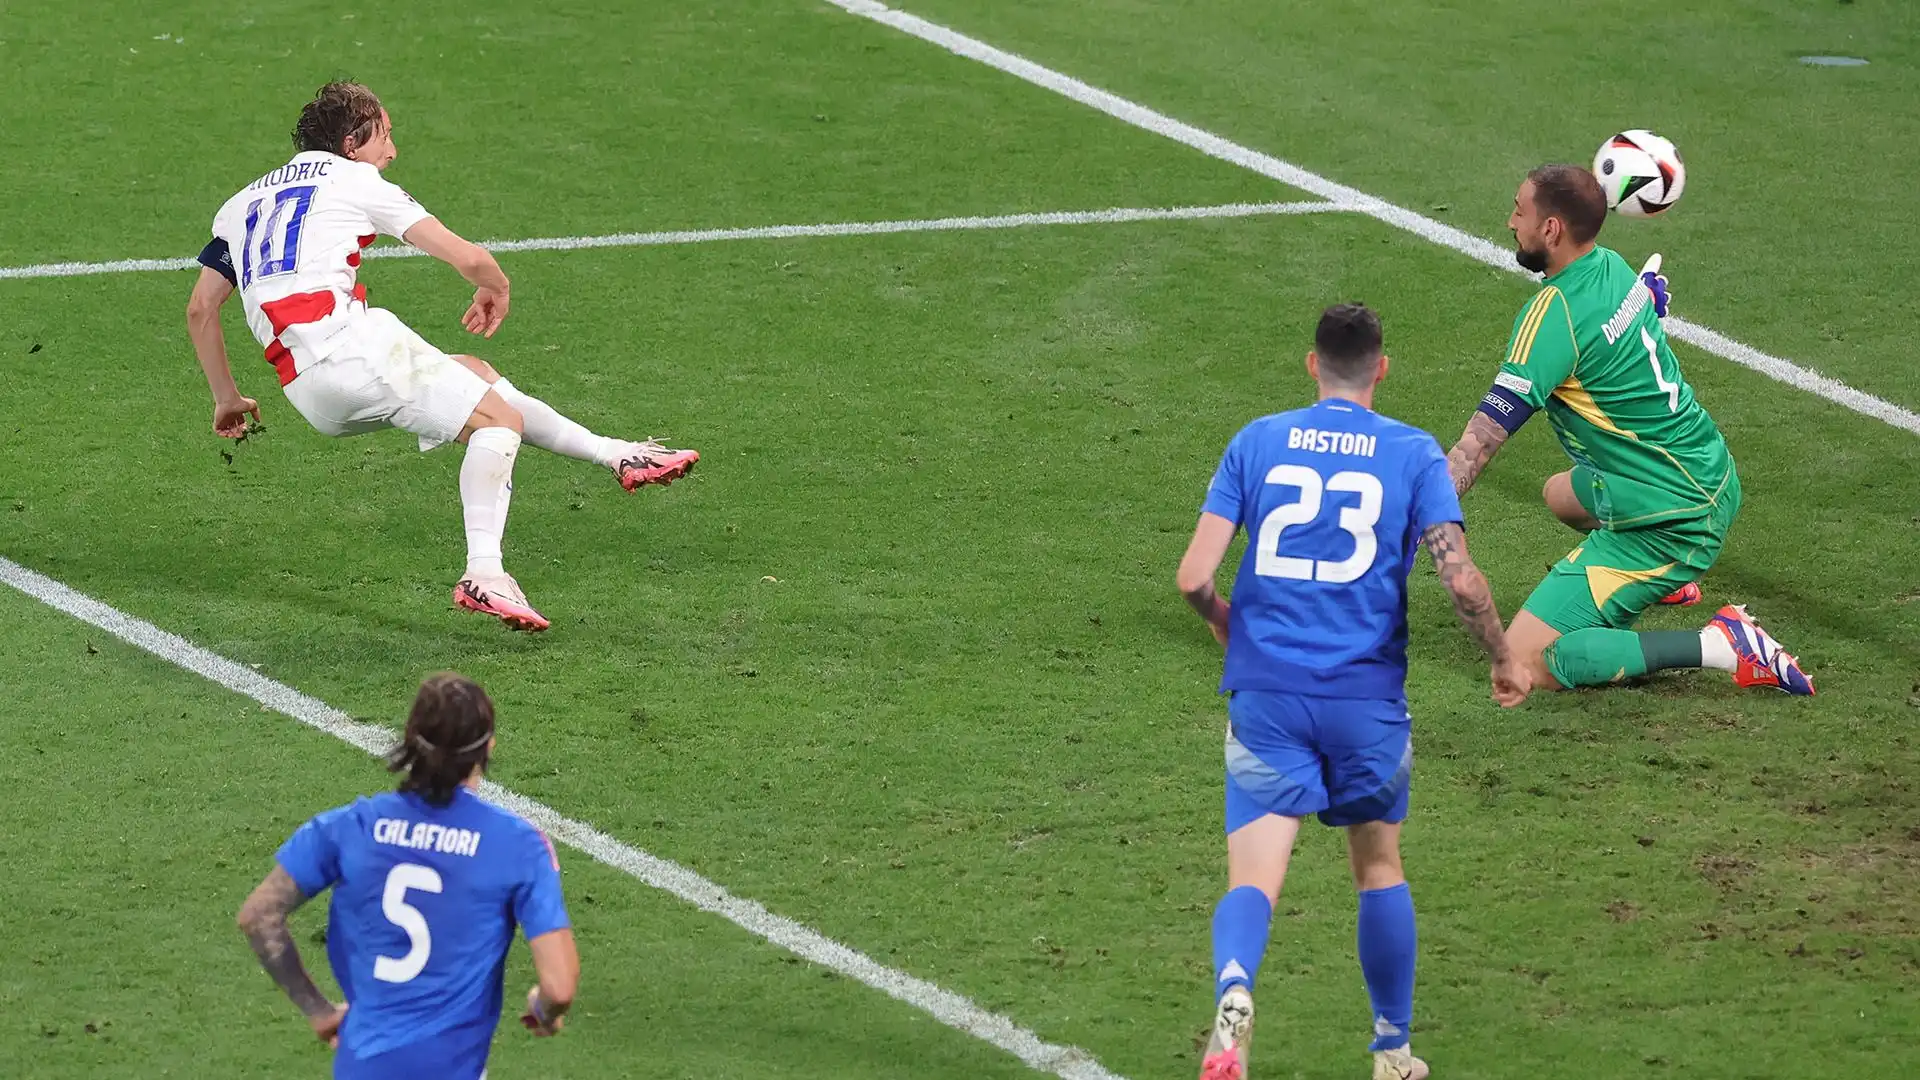 Perché un minuto dopo l'Italia ha comunque subito gol